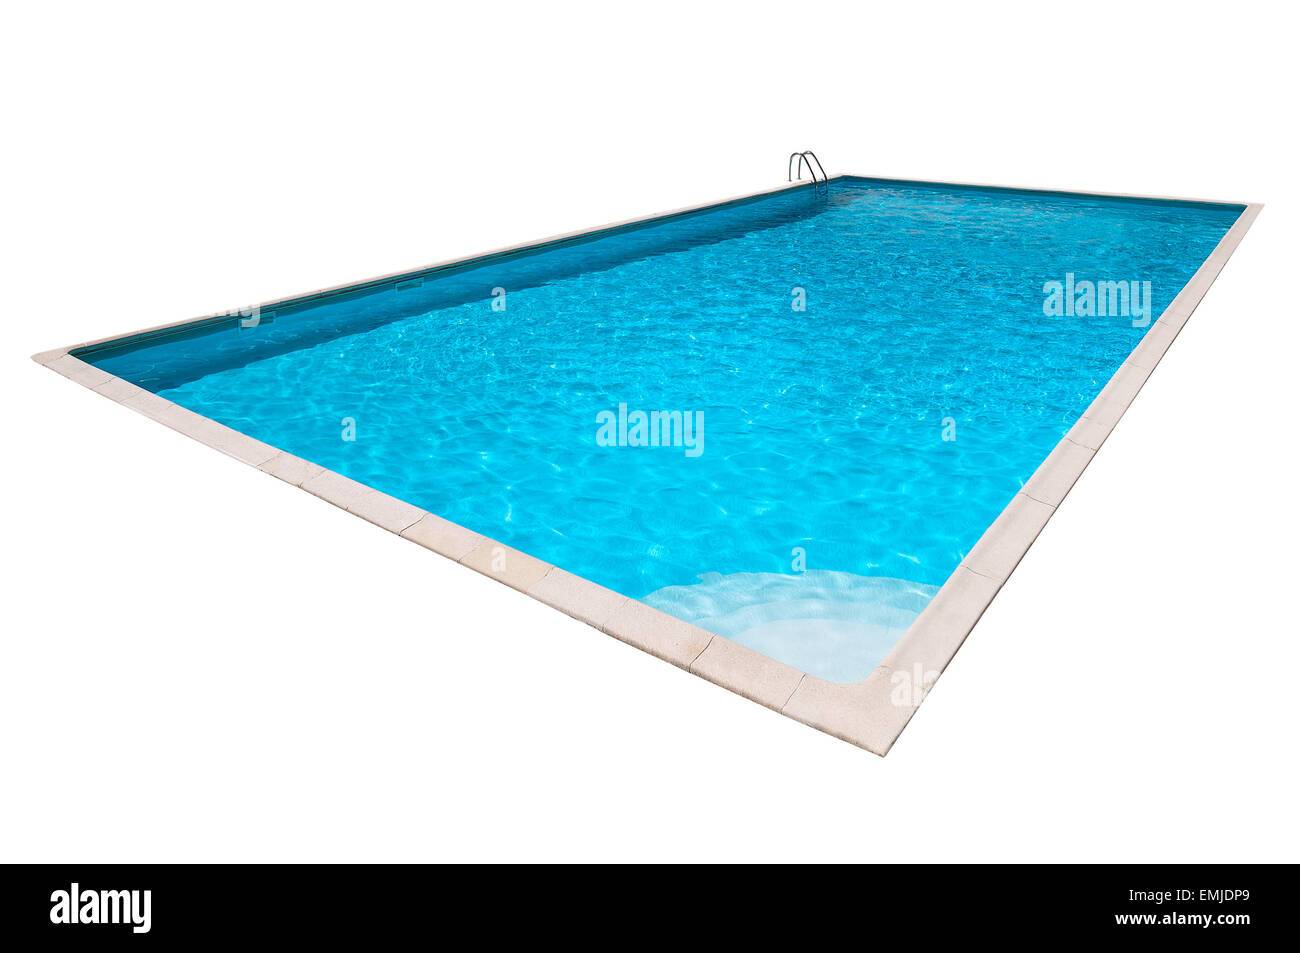 La piscina rectangular con agua azul aislado Foto de stock